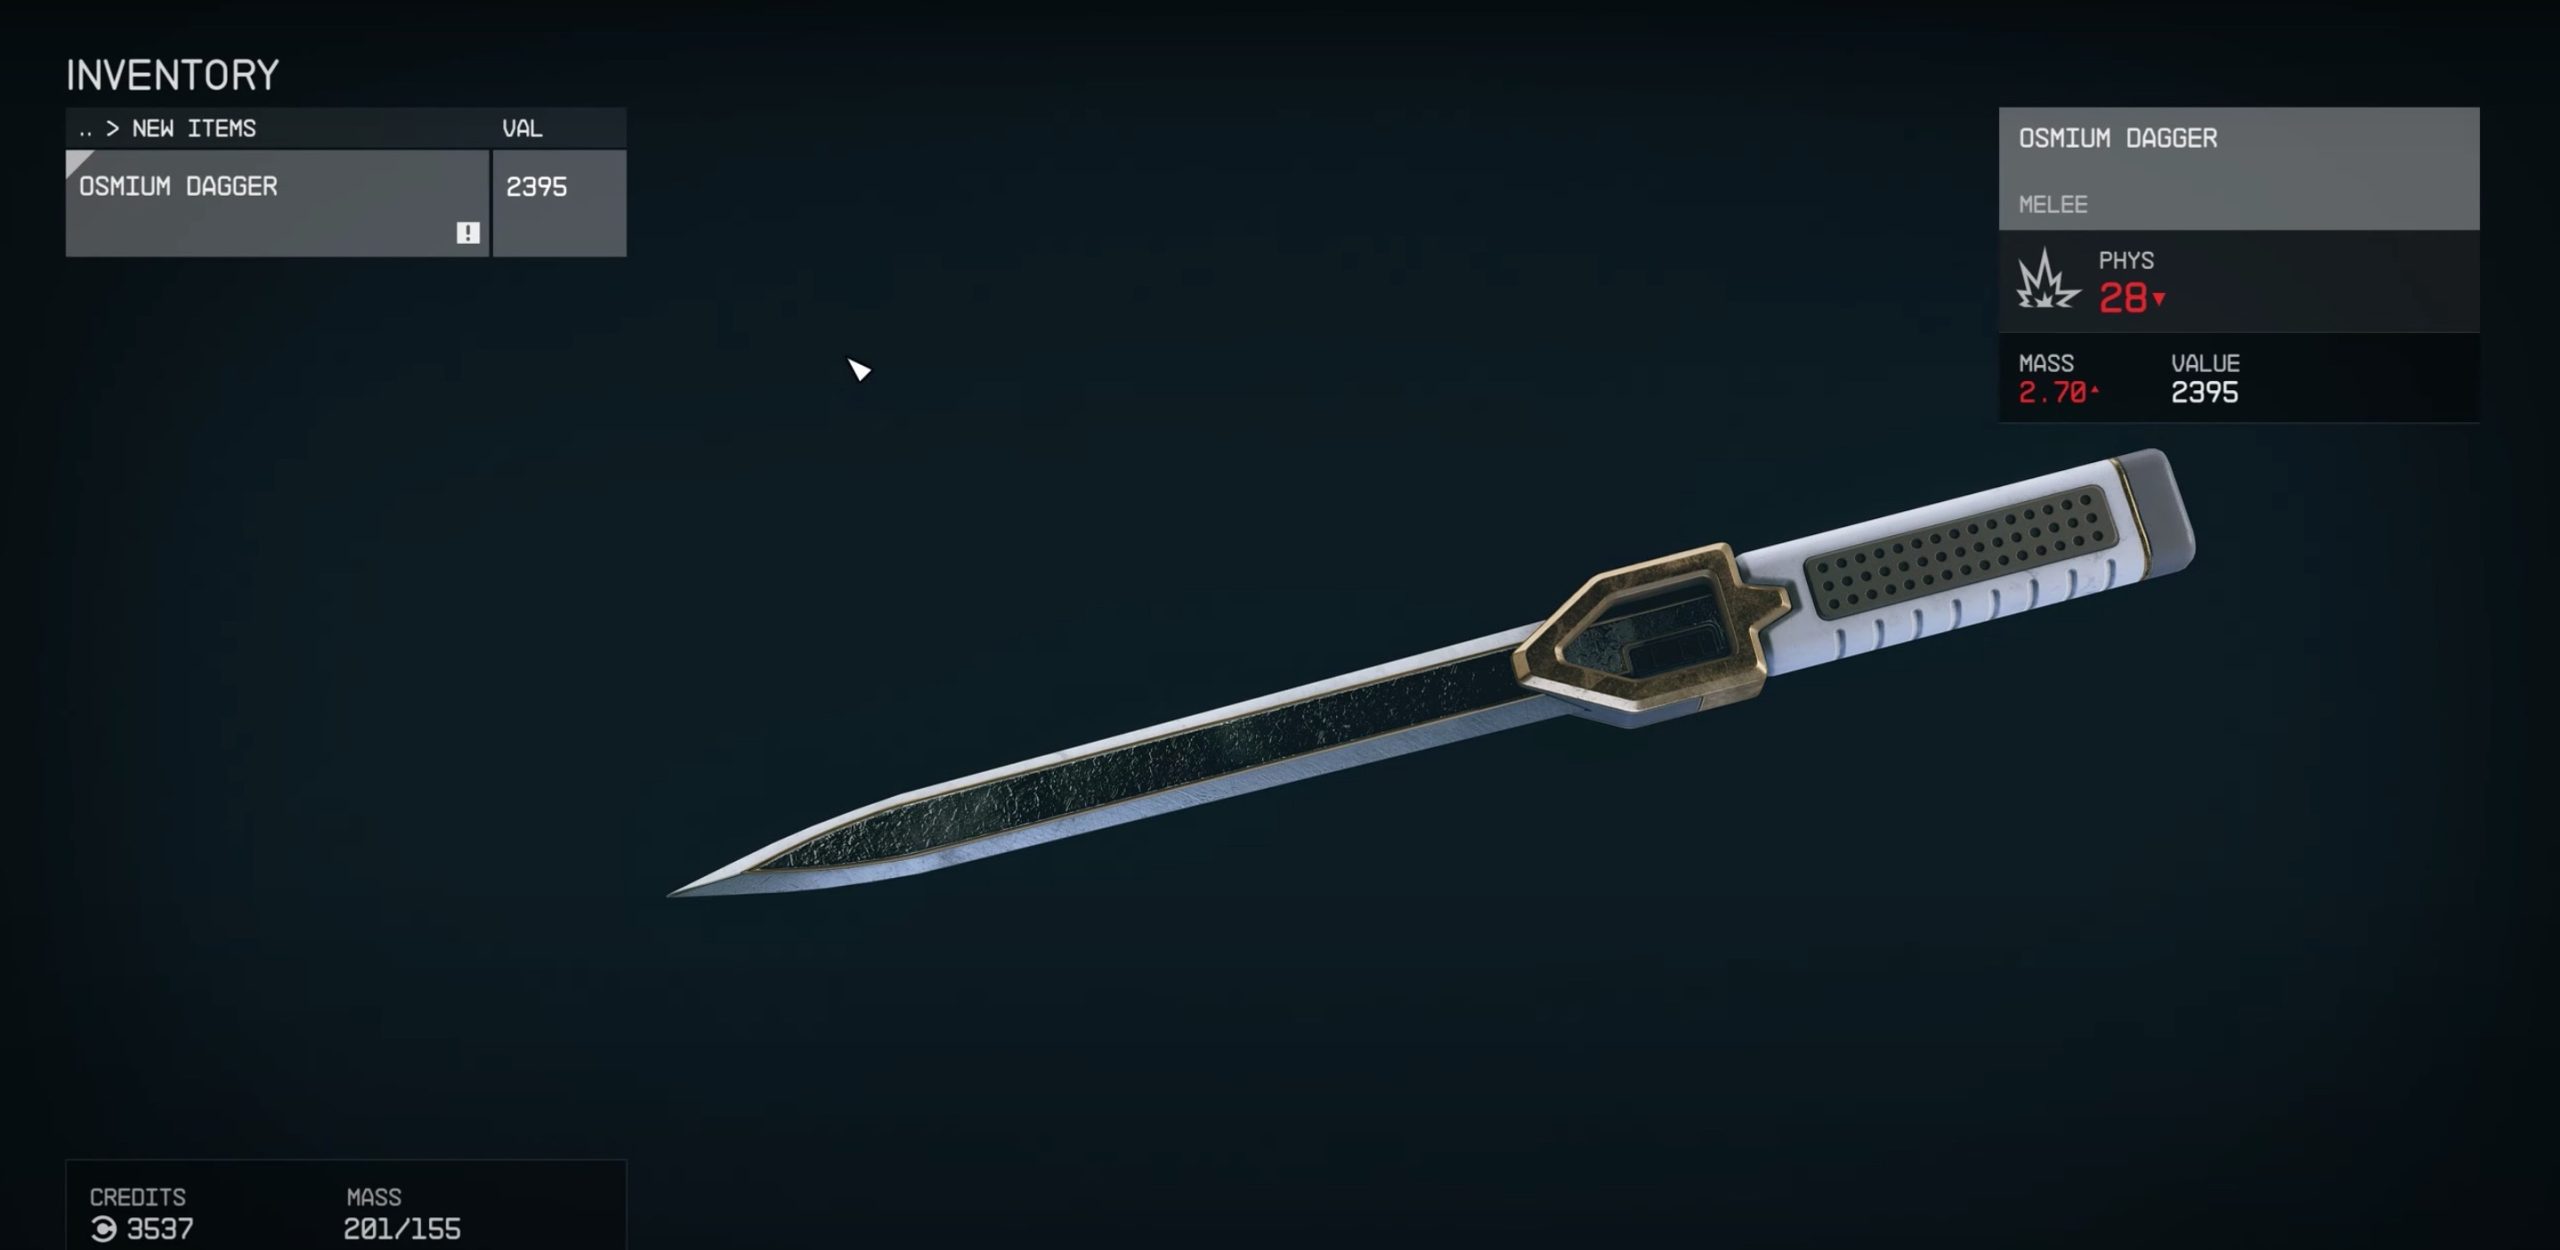 Osmium Dagger